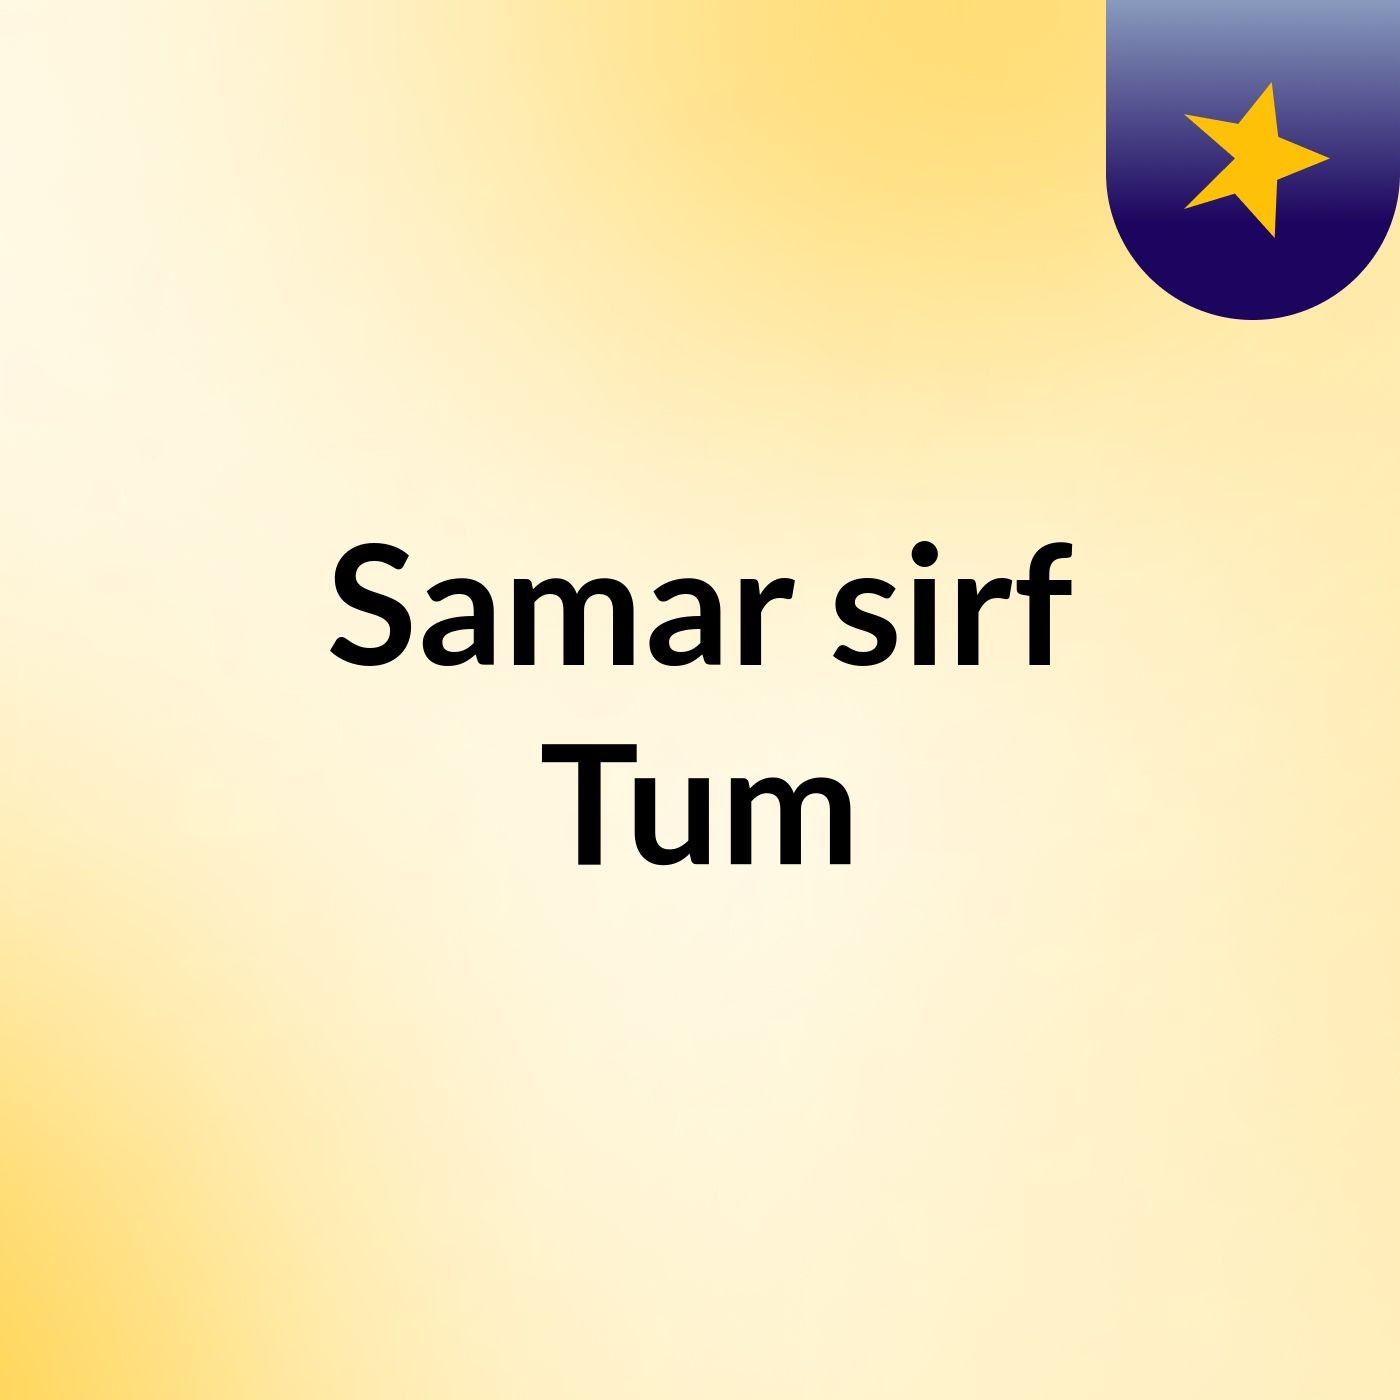 Episode 6 - Samar sirf Tum